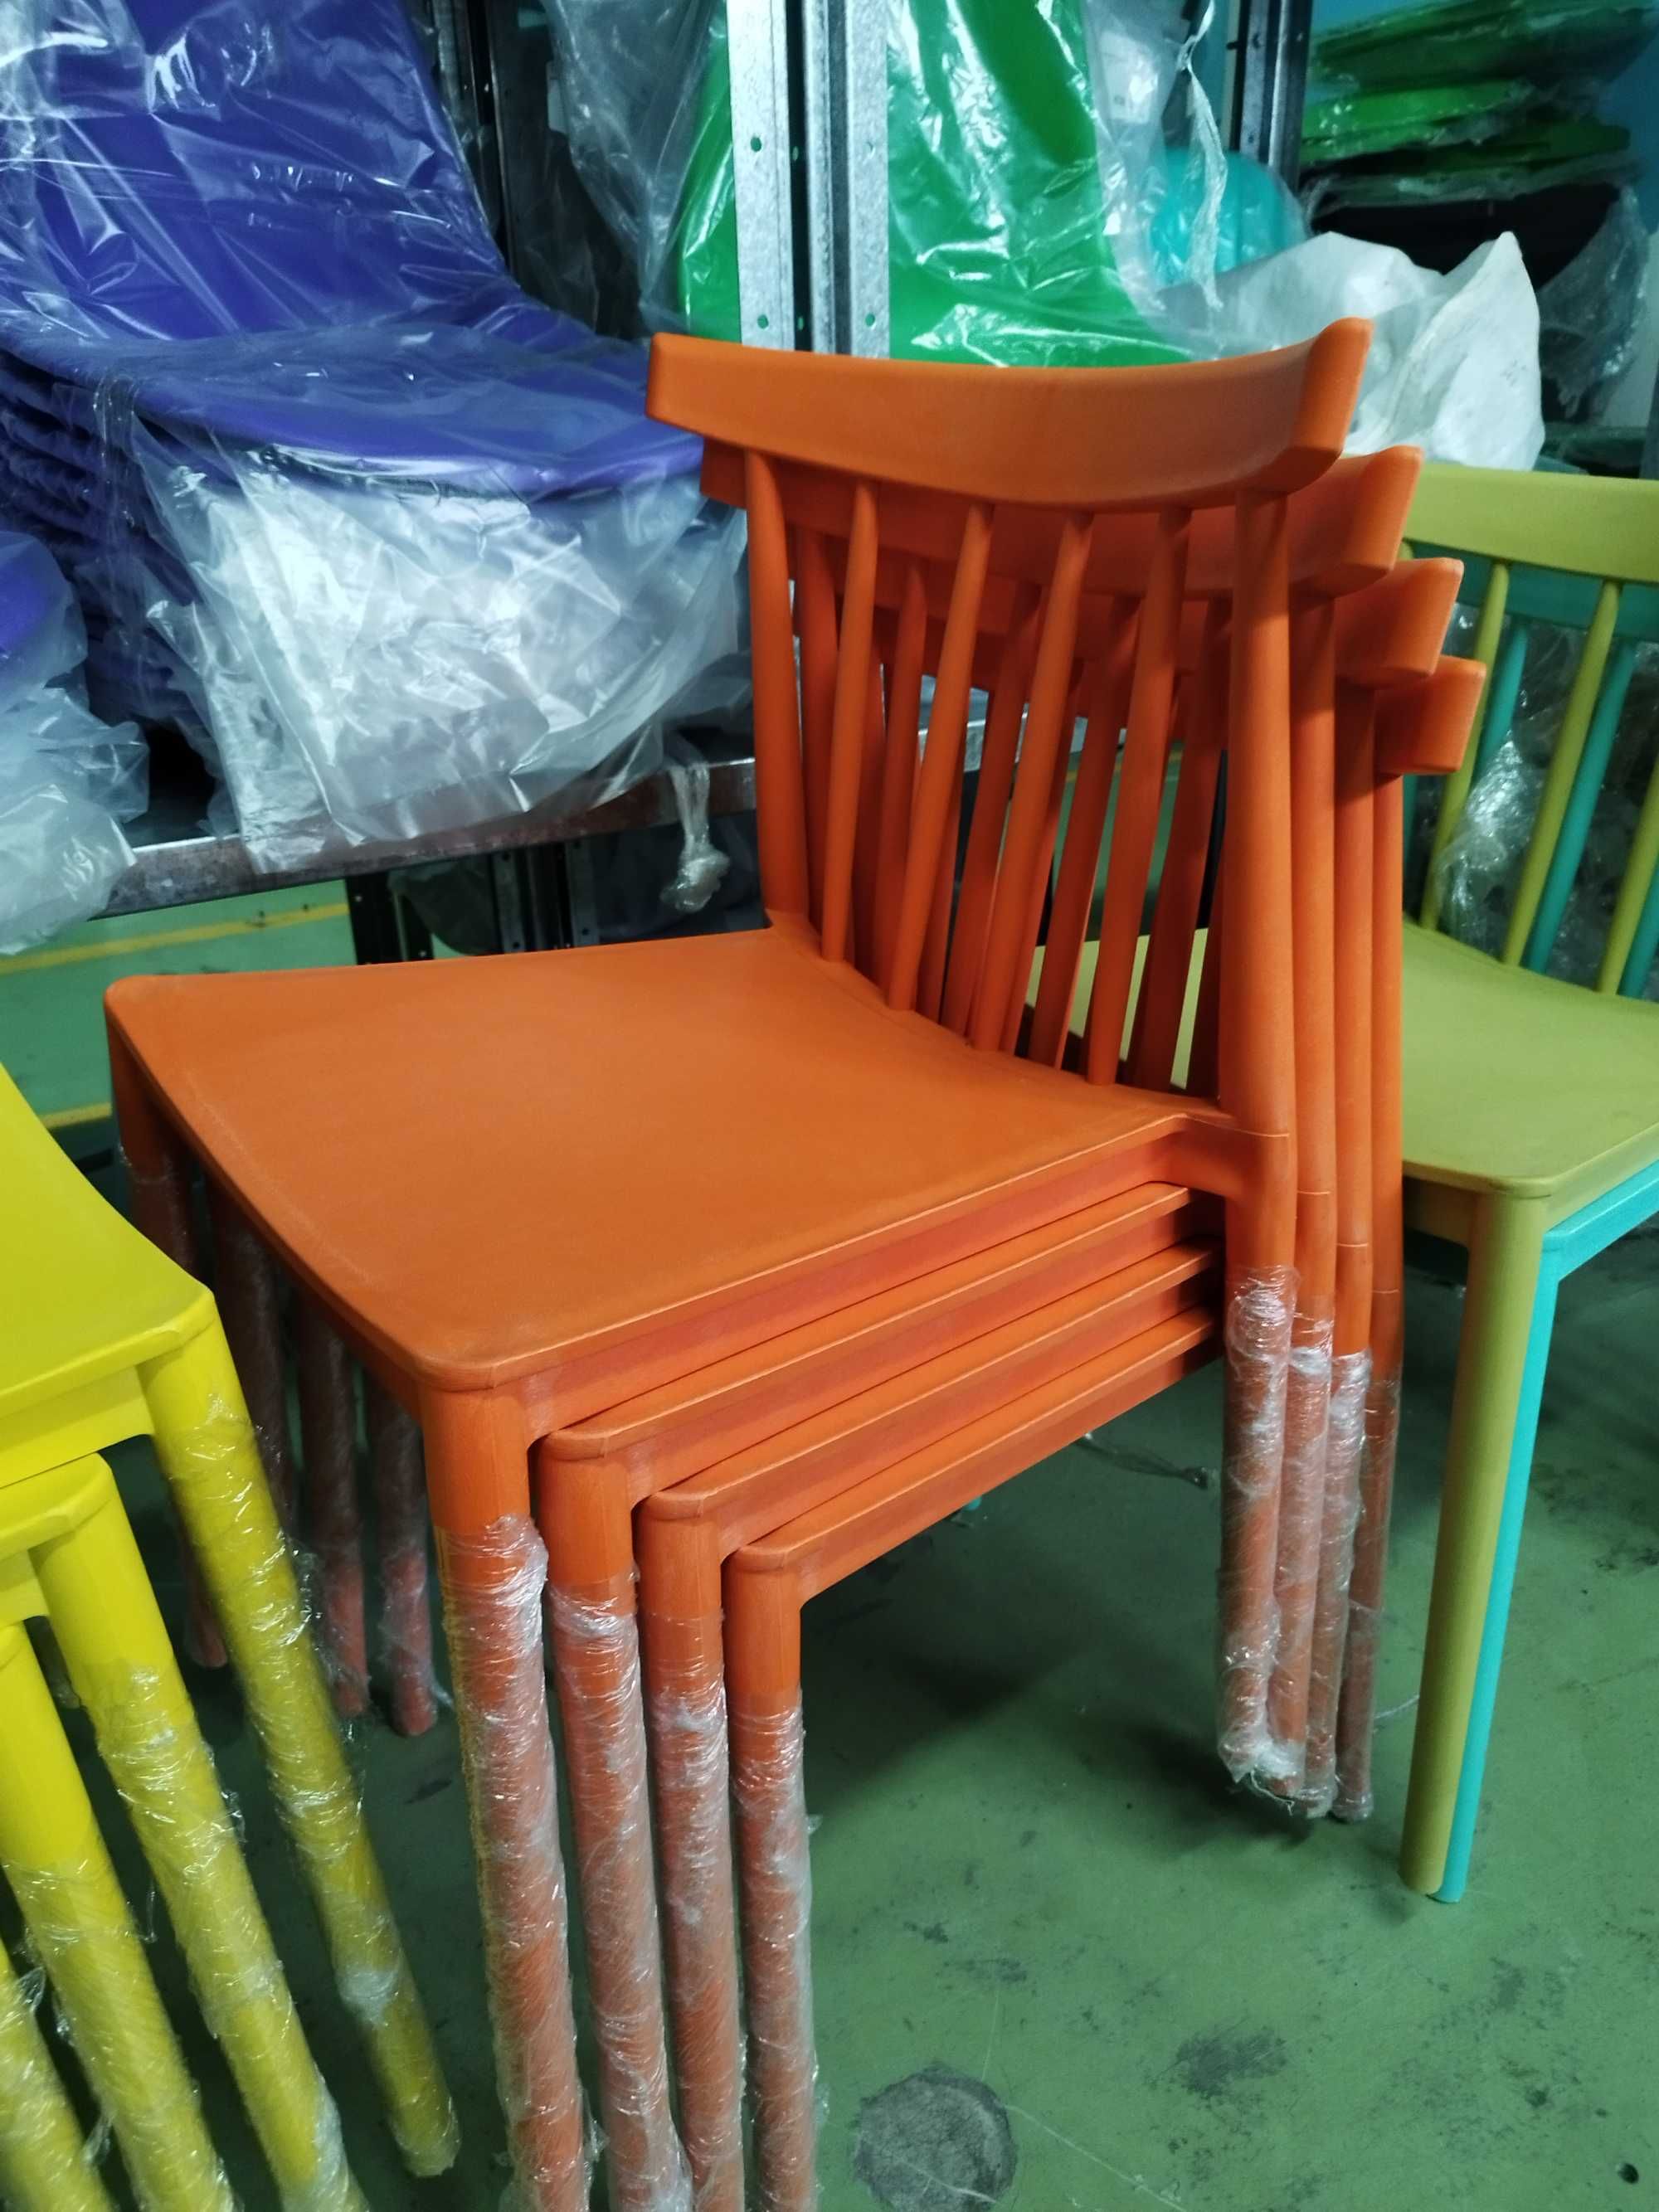 Пластиковые стулья из экопластика для школ детских центров кафе